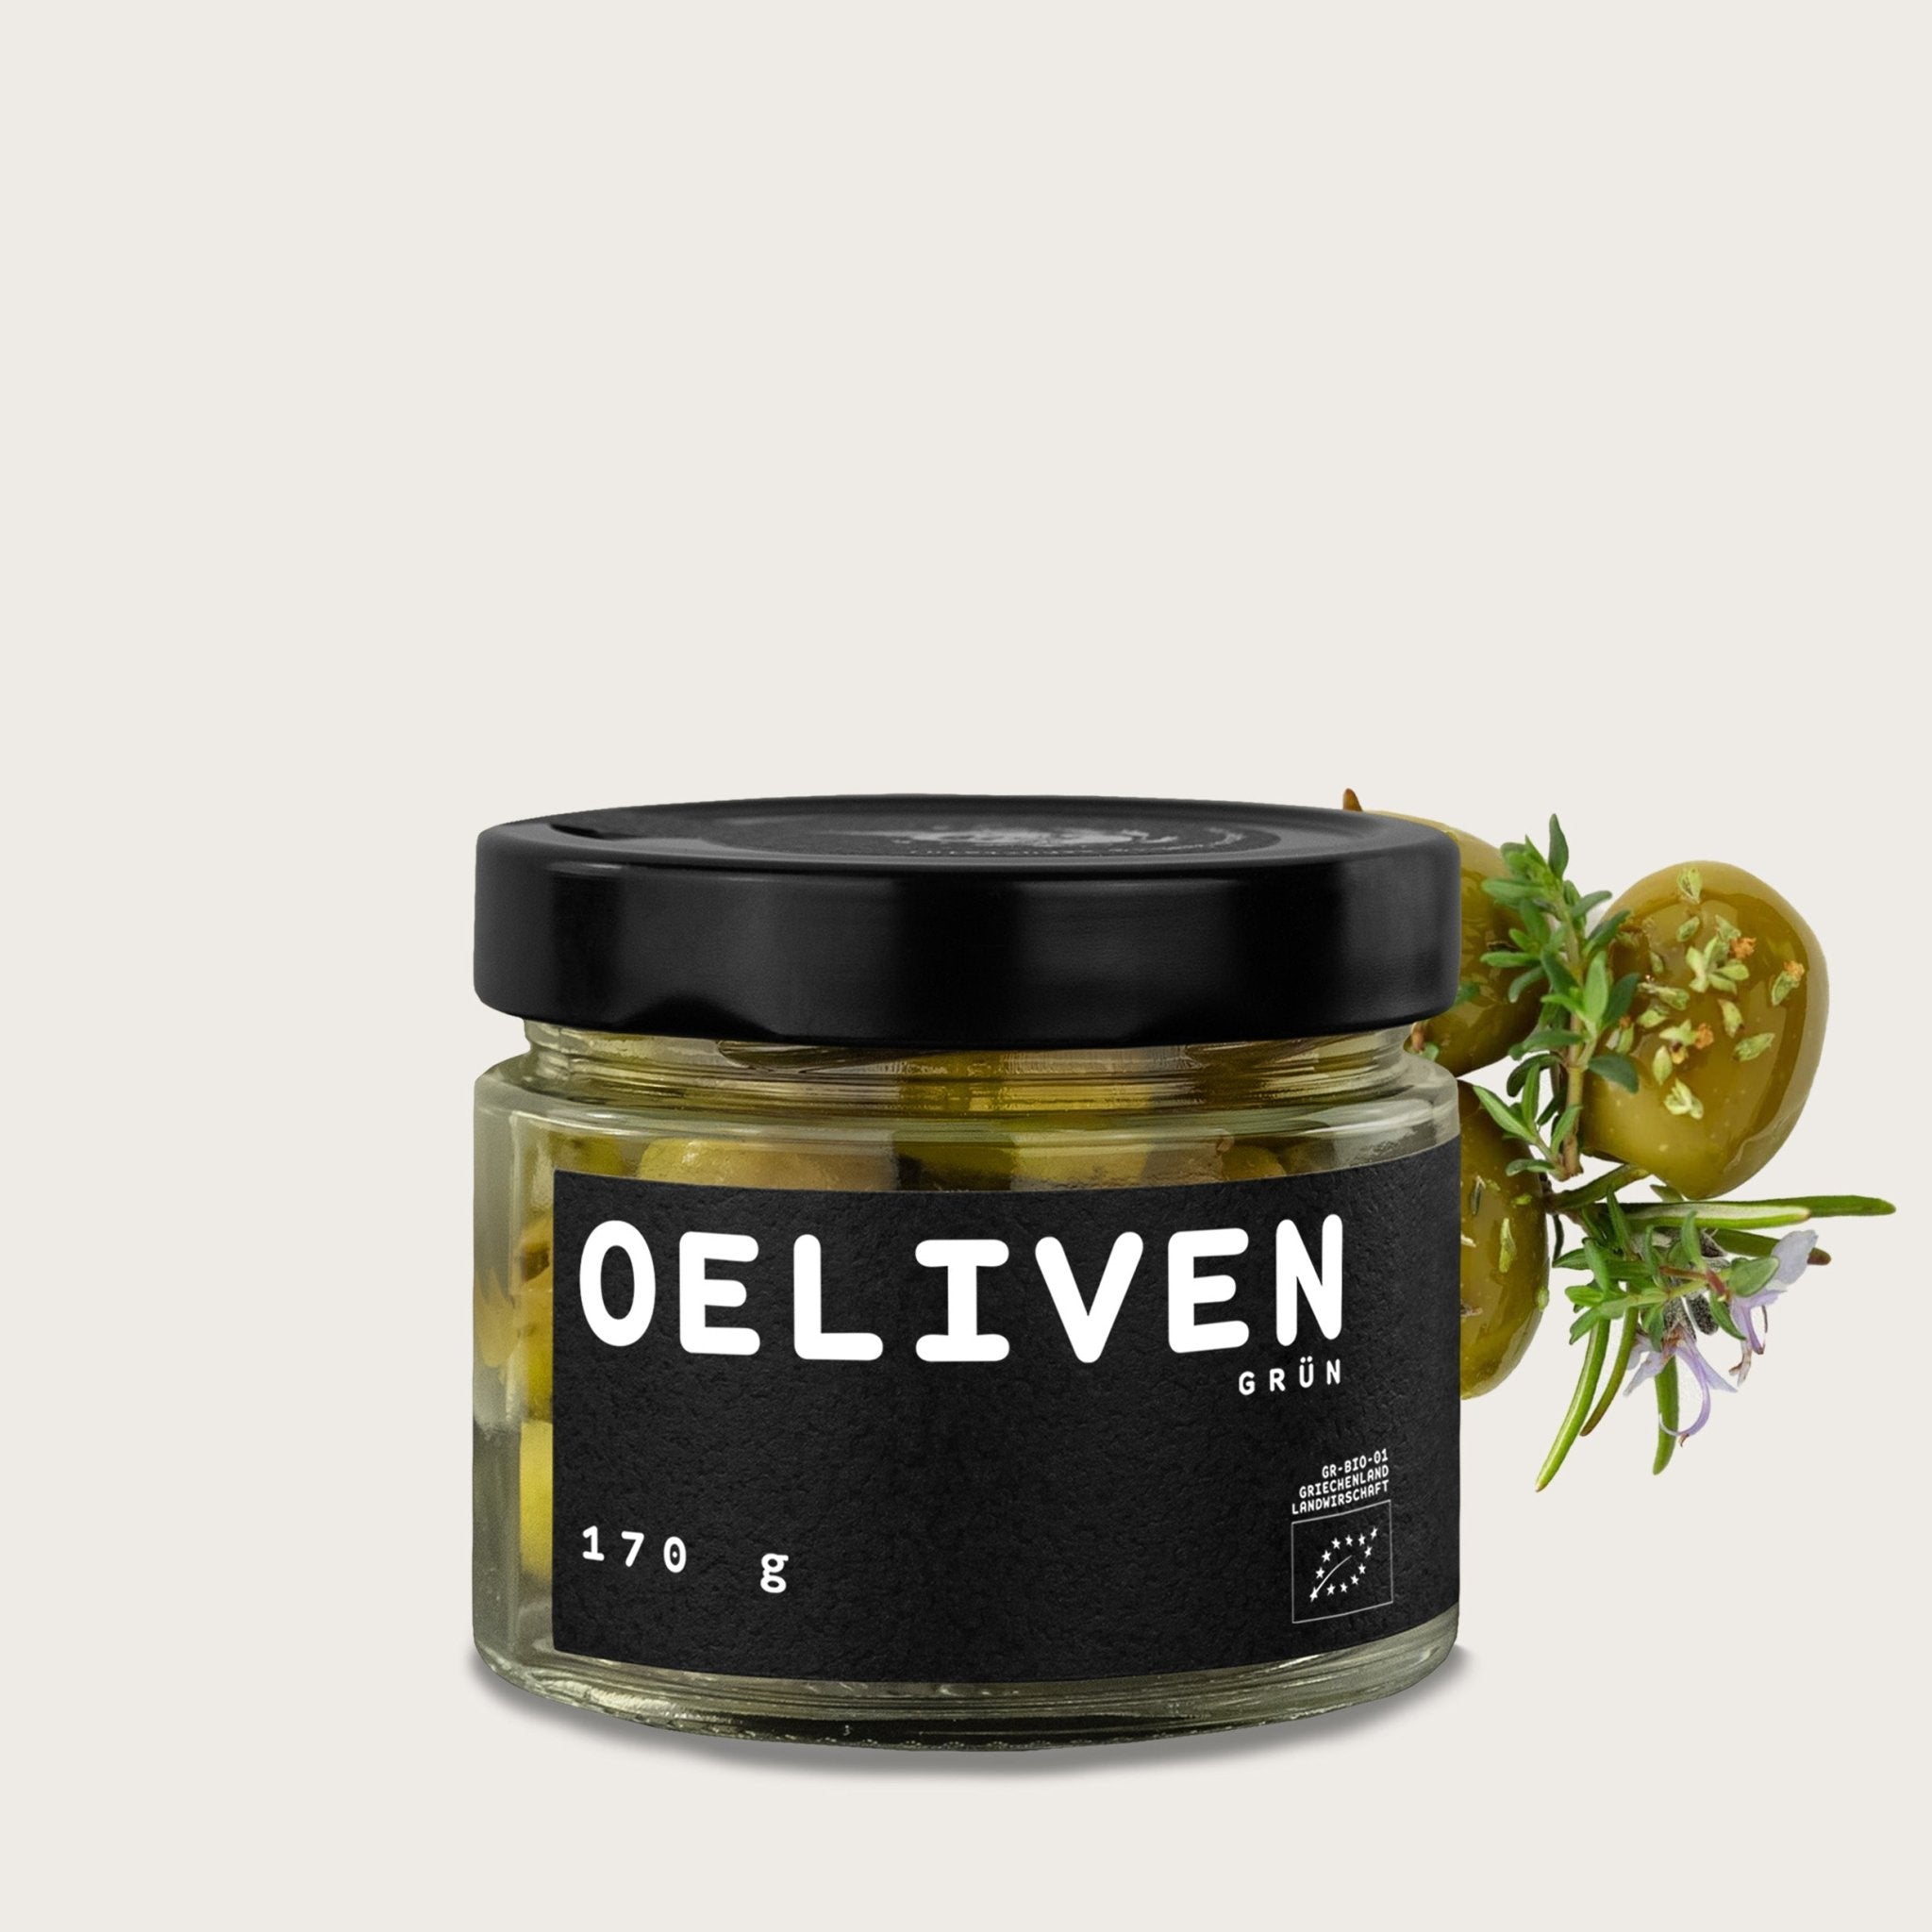 OELiven Grün 170 g - Grüne Bio Oliven mit Kräutern - OEL - Griechische Produkte und Olivenöl - Bestandsartikel red. MWST (7%) - OEL Olivenprodukte